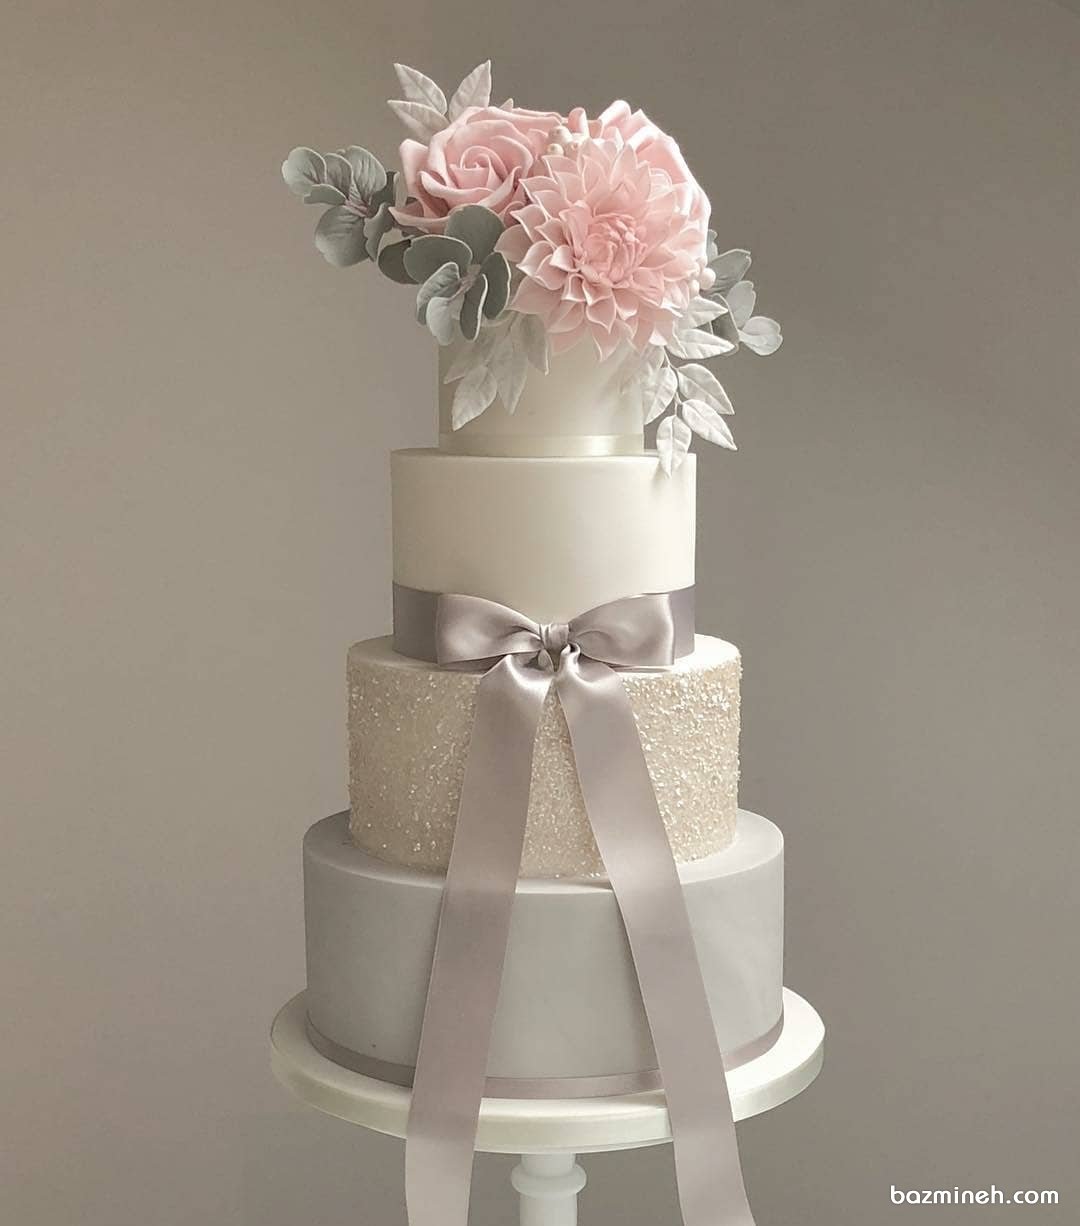 کیک چند طبقه جشن نامزدی، عروسی یا سالگرد ازدواج تزیین شده با گل های صورتی و پاپیون